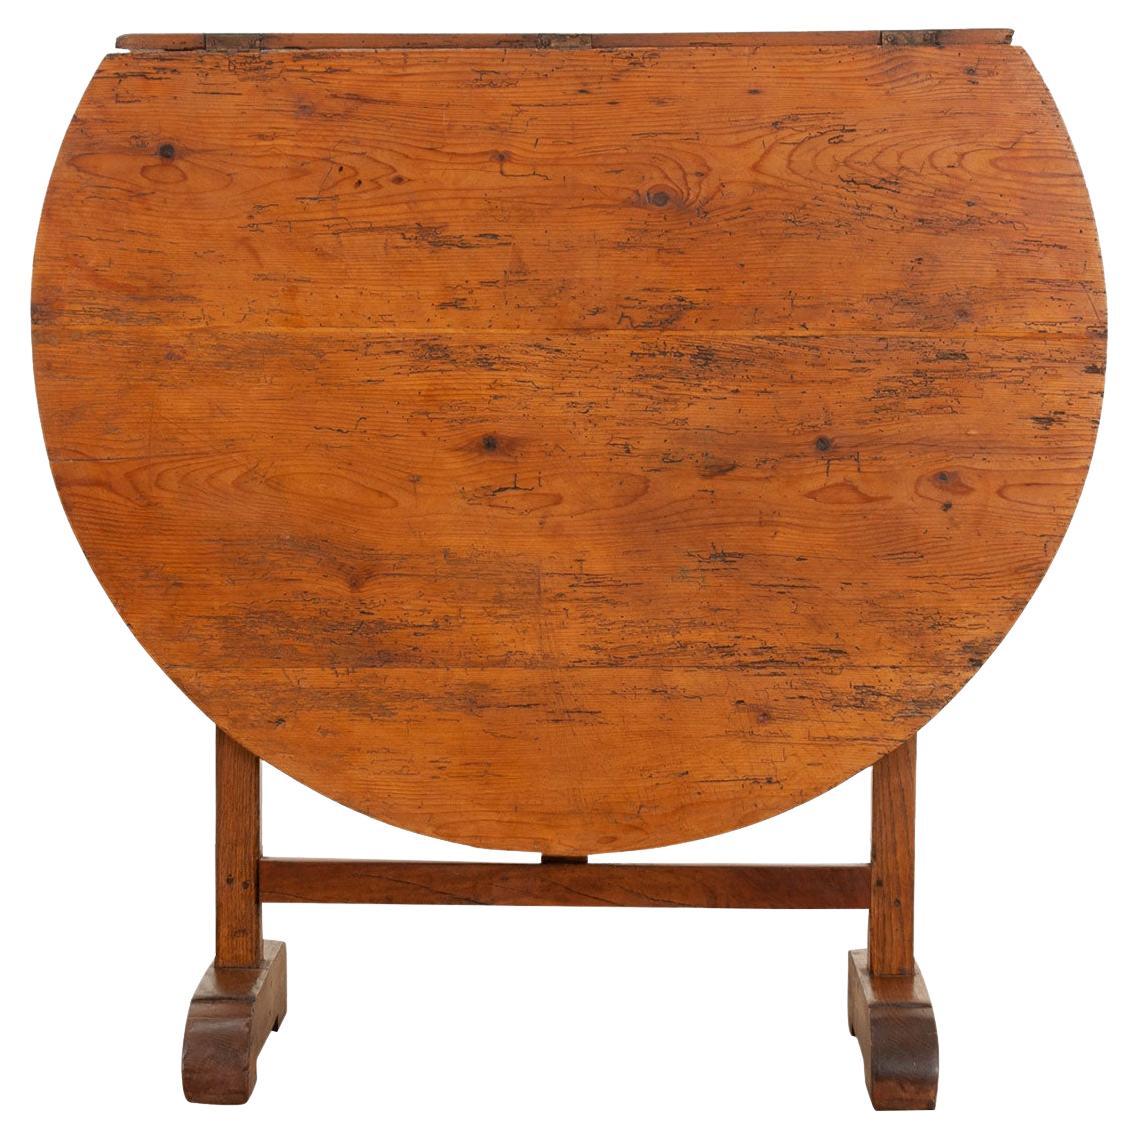 Table à vendange en Oak du 19e siècle, française